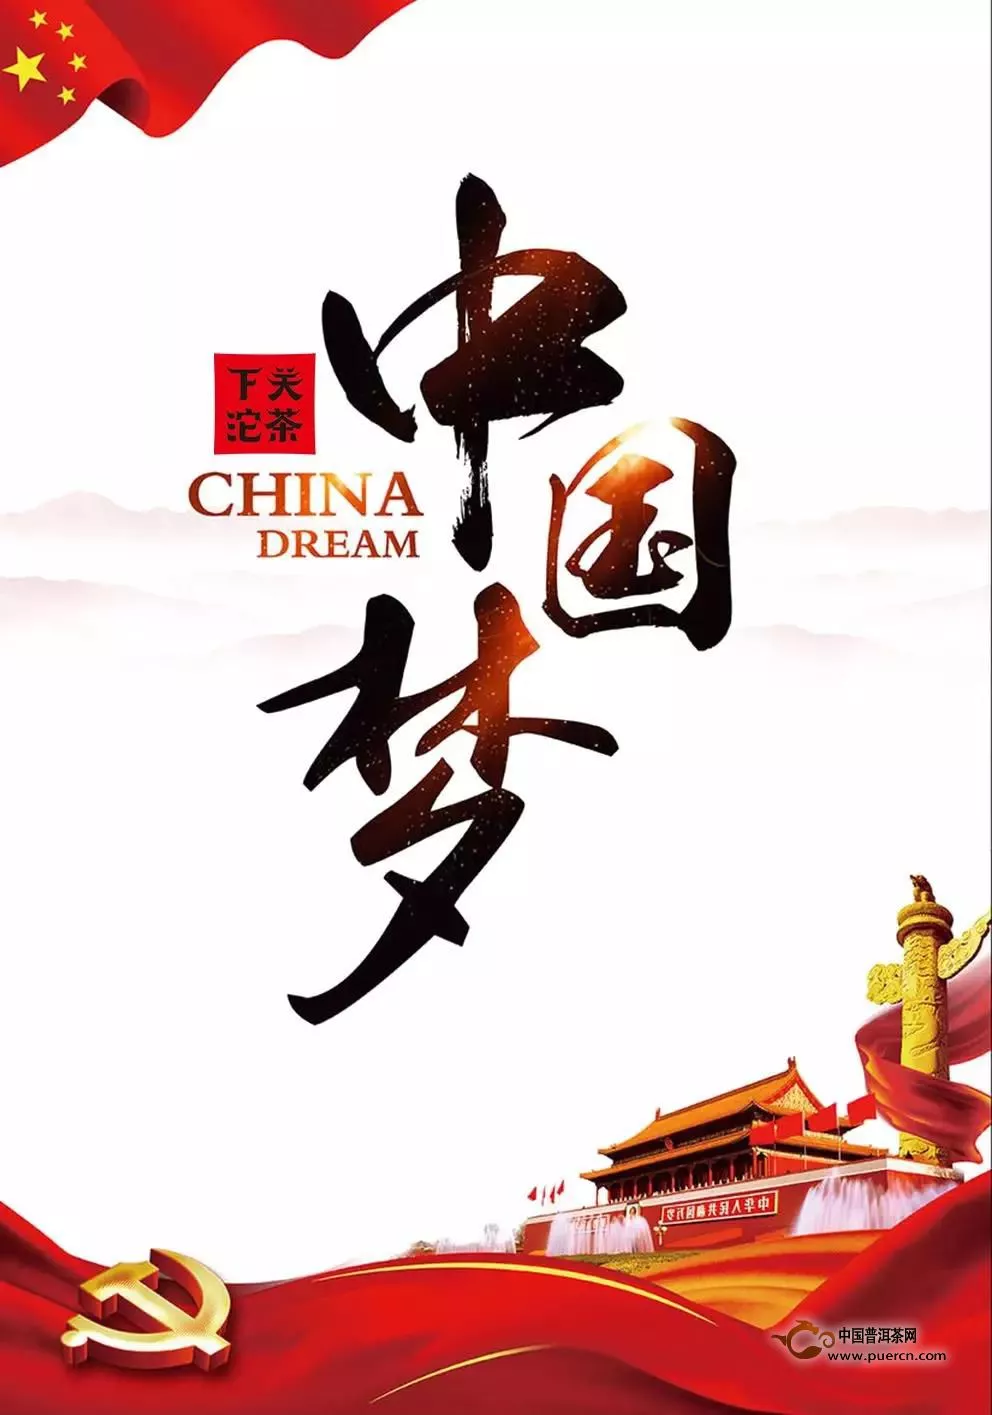 【中国梦】中国筑梦之路，关茶一直在前行！